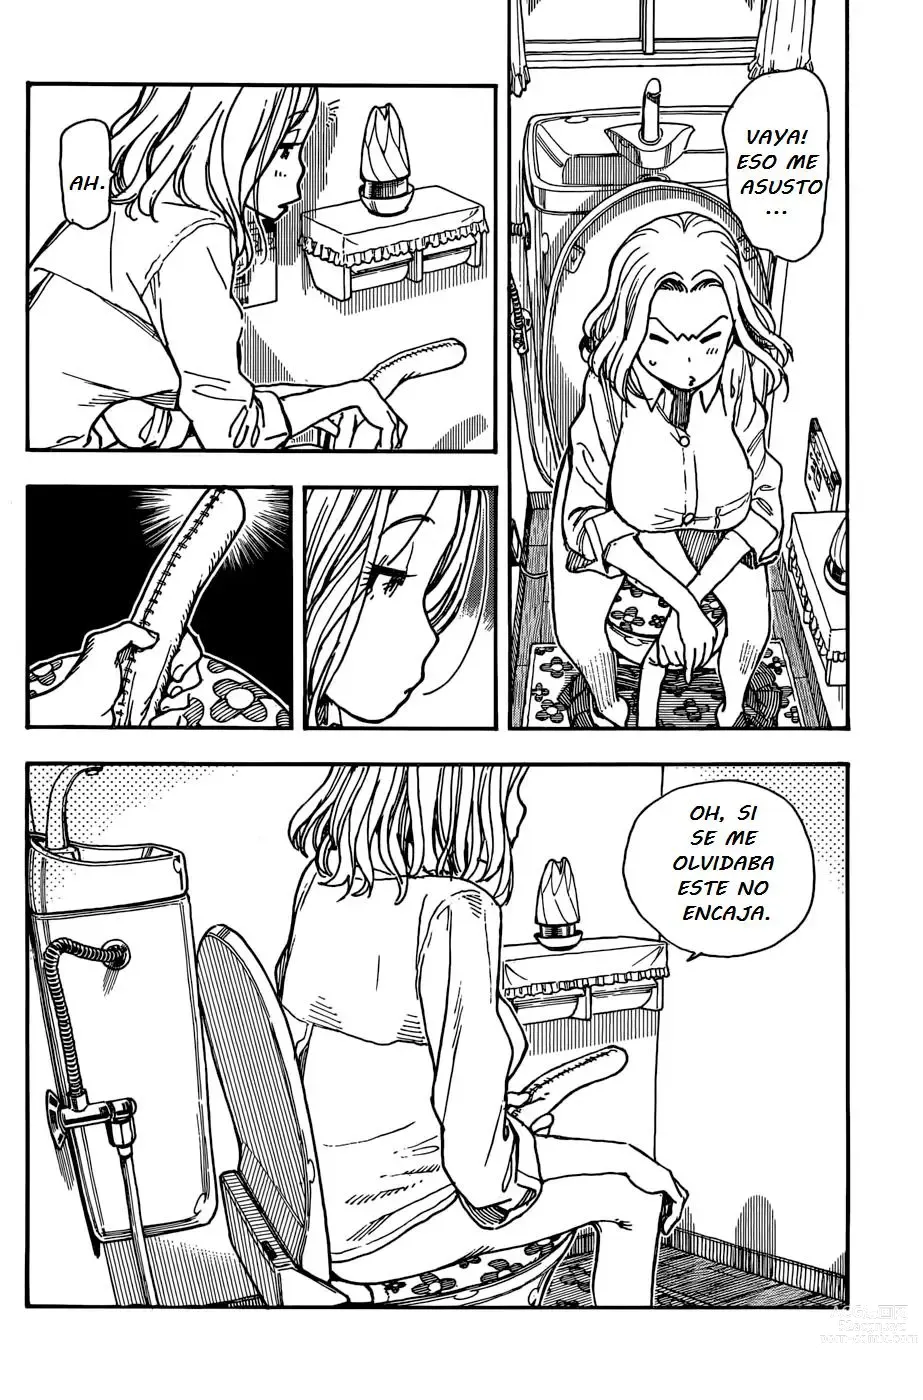 Page 151 of manga Ashitaba-san Chi no Muko Kurashi v01